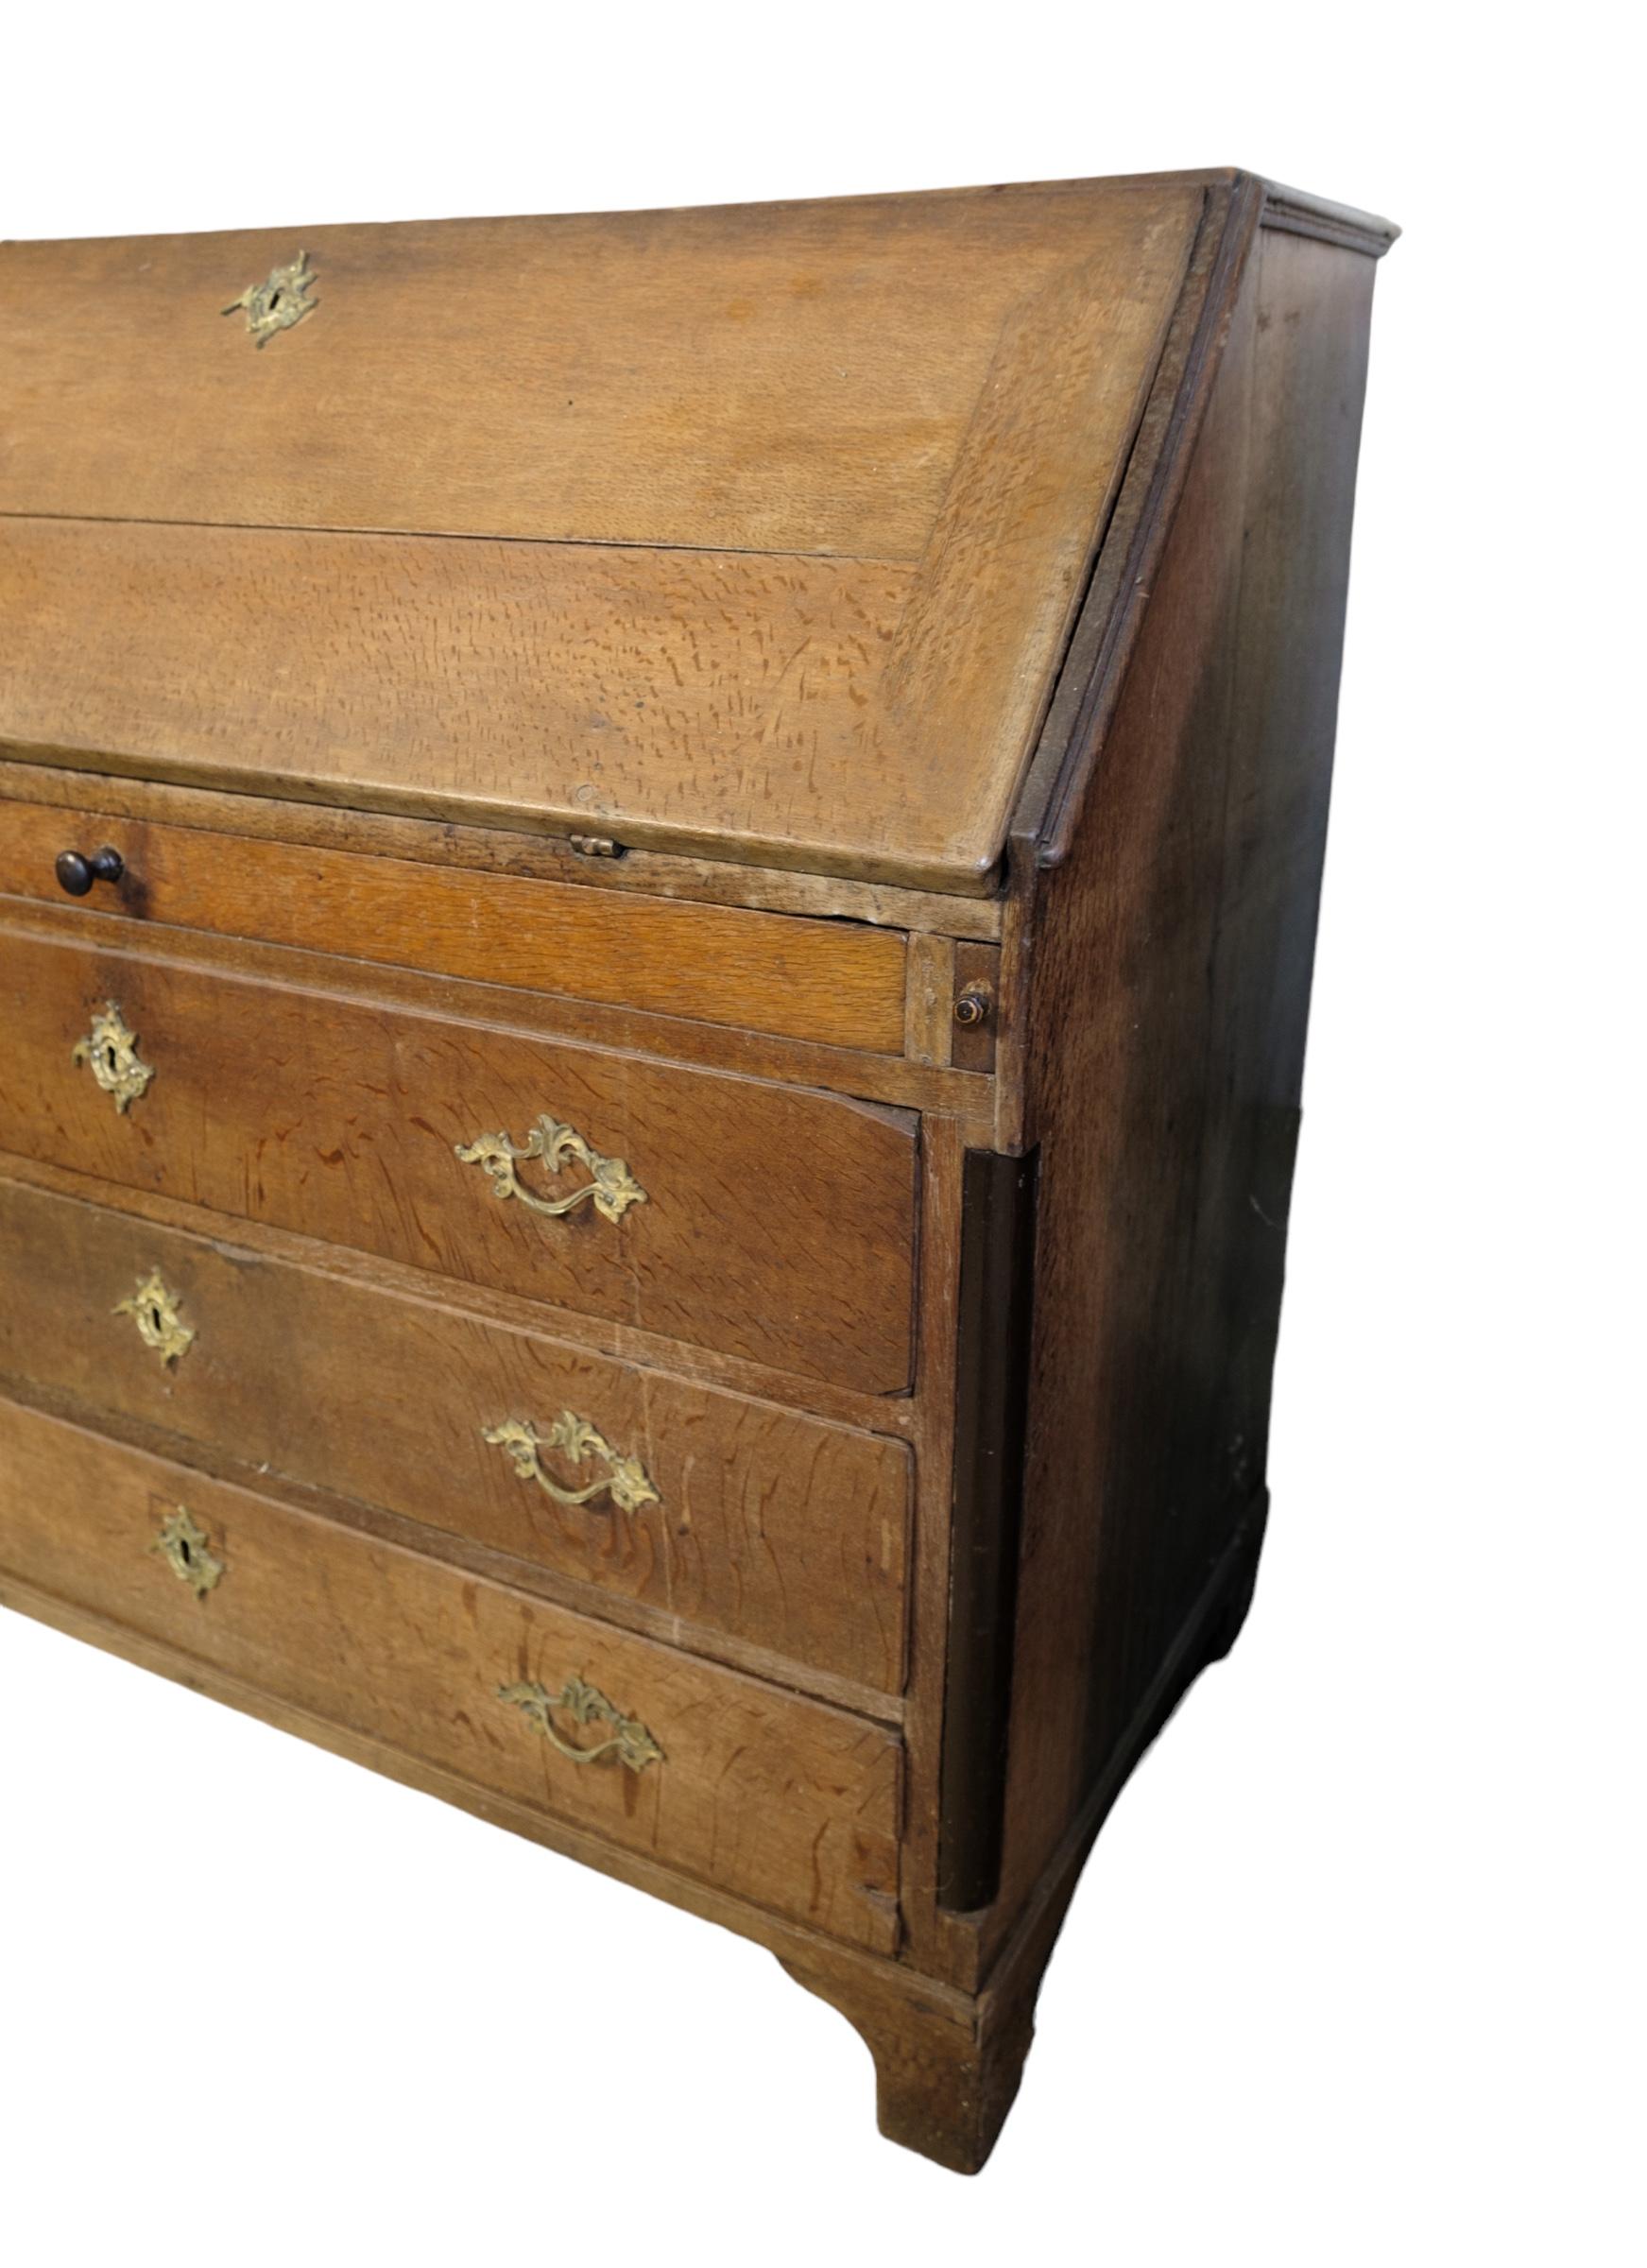 Chatol aus Eiche und Messinggriffen, aus England um 1840. Die Möbel sind in einem schönen antiken Zustand.
Maße in cm: H:109 B:120 T:60
+ Bedingung